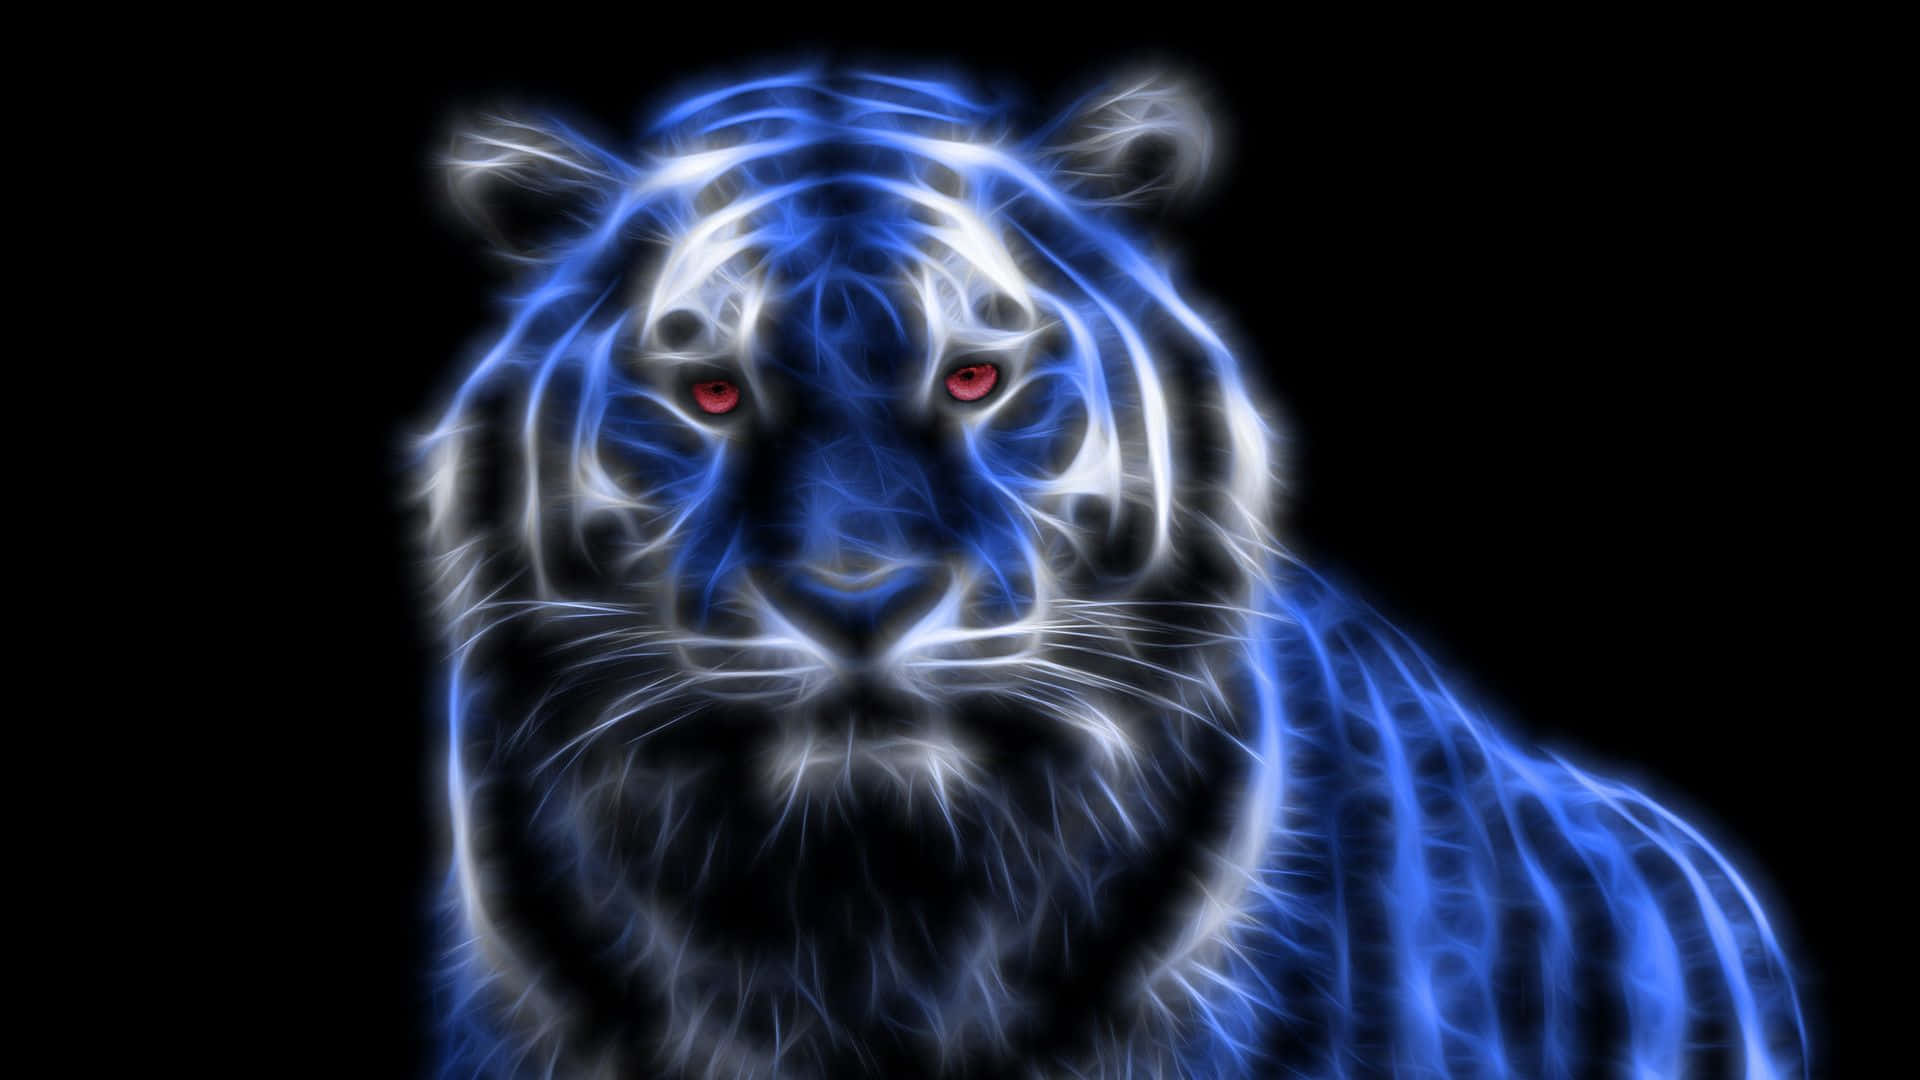 Neonanimal Bengal Tiger: Neon Djur Bengal Tiger. Wallpaper